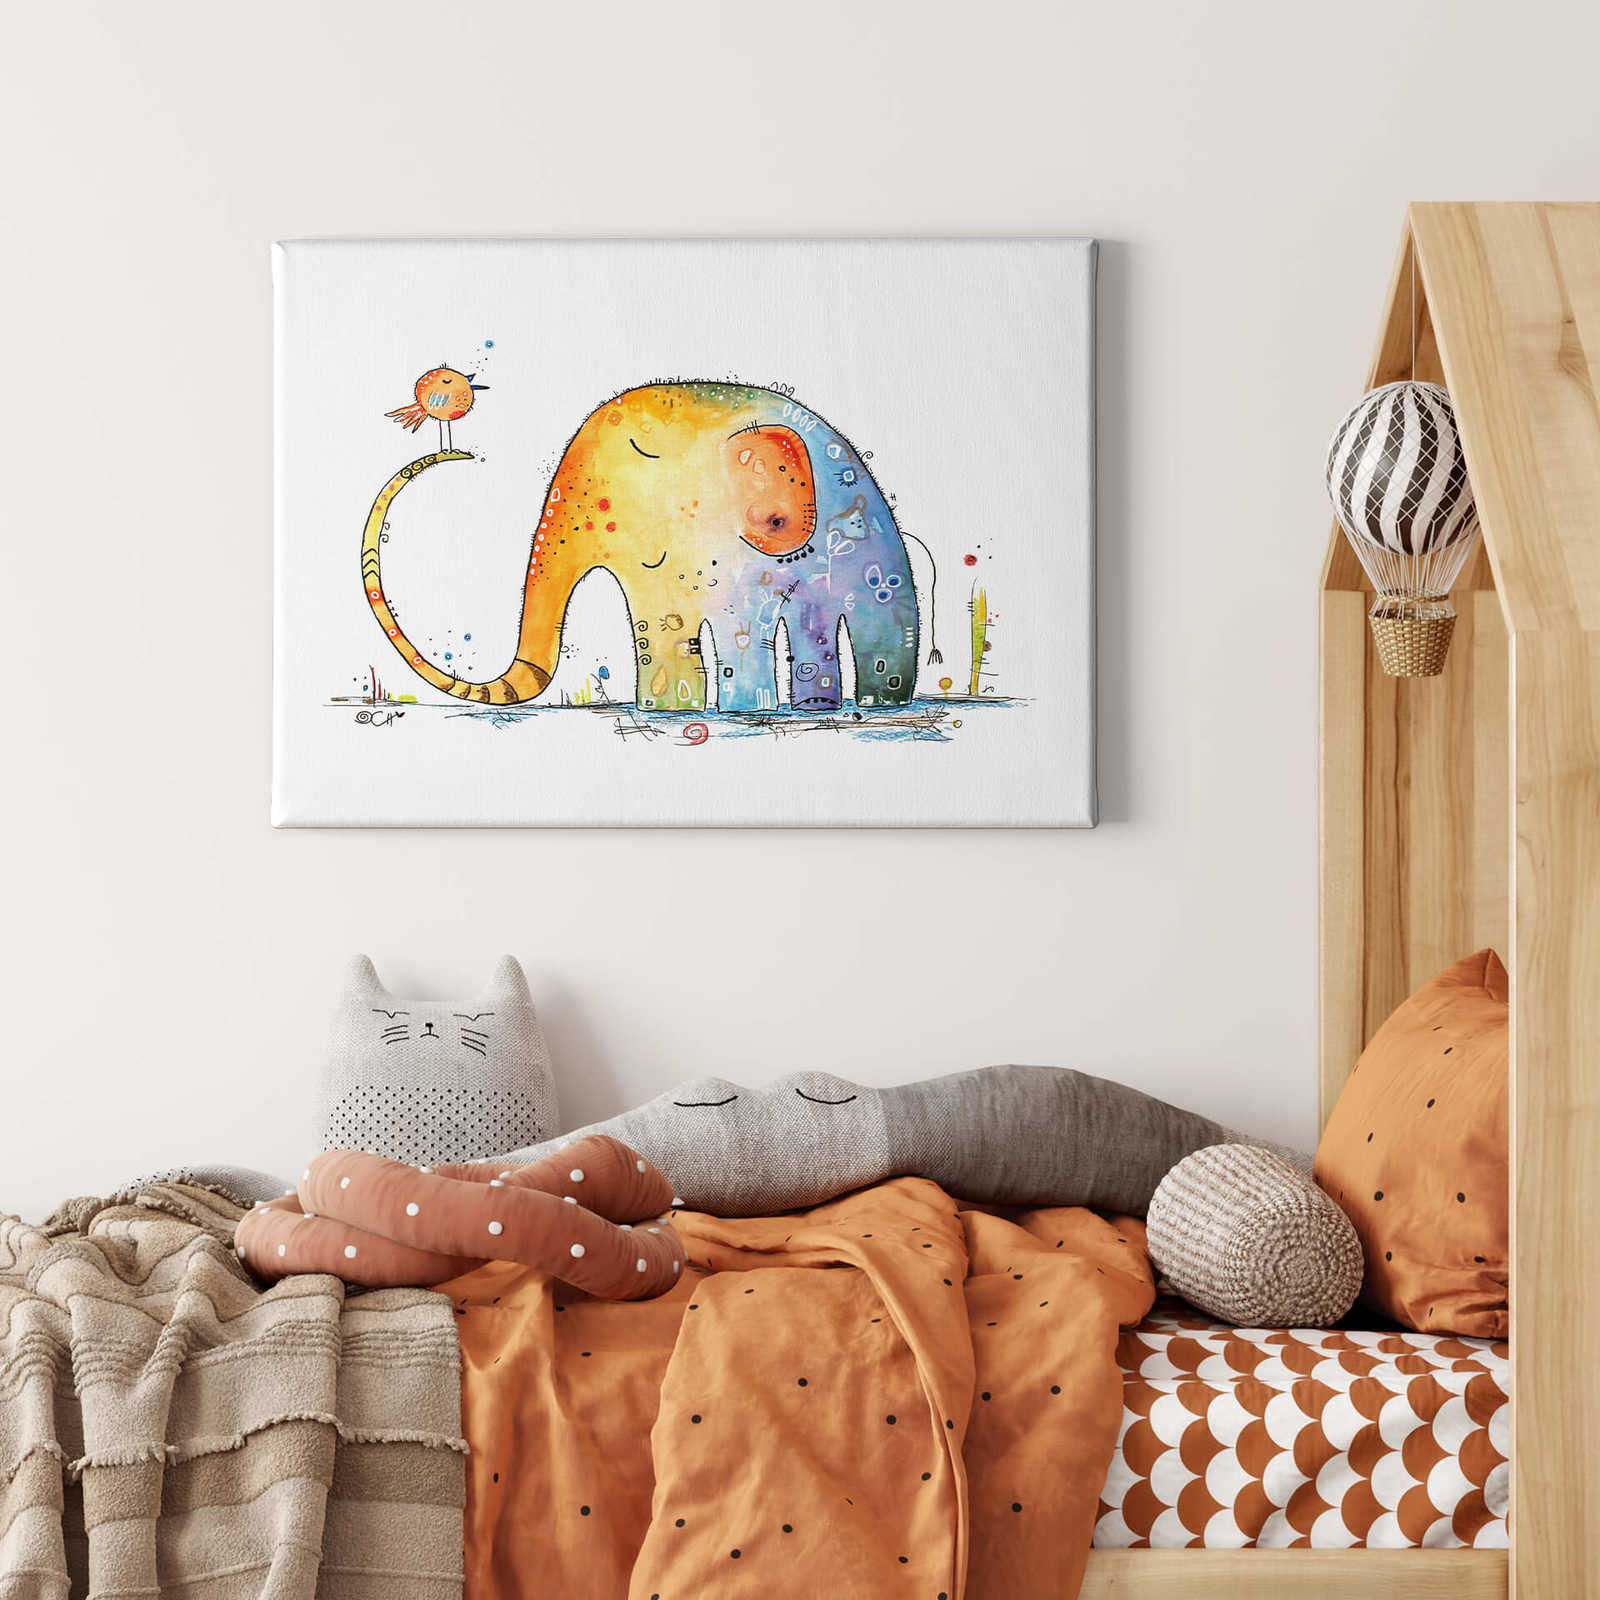             Tableau sur toile Enfants, éléphant & oiseau de Hagenmeyer - 0,70 m x 0,50 m
        